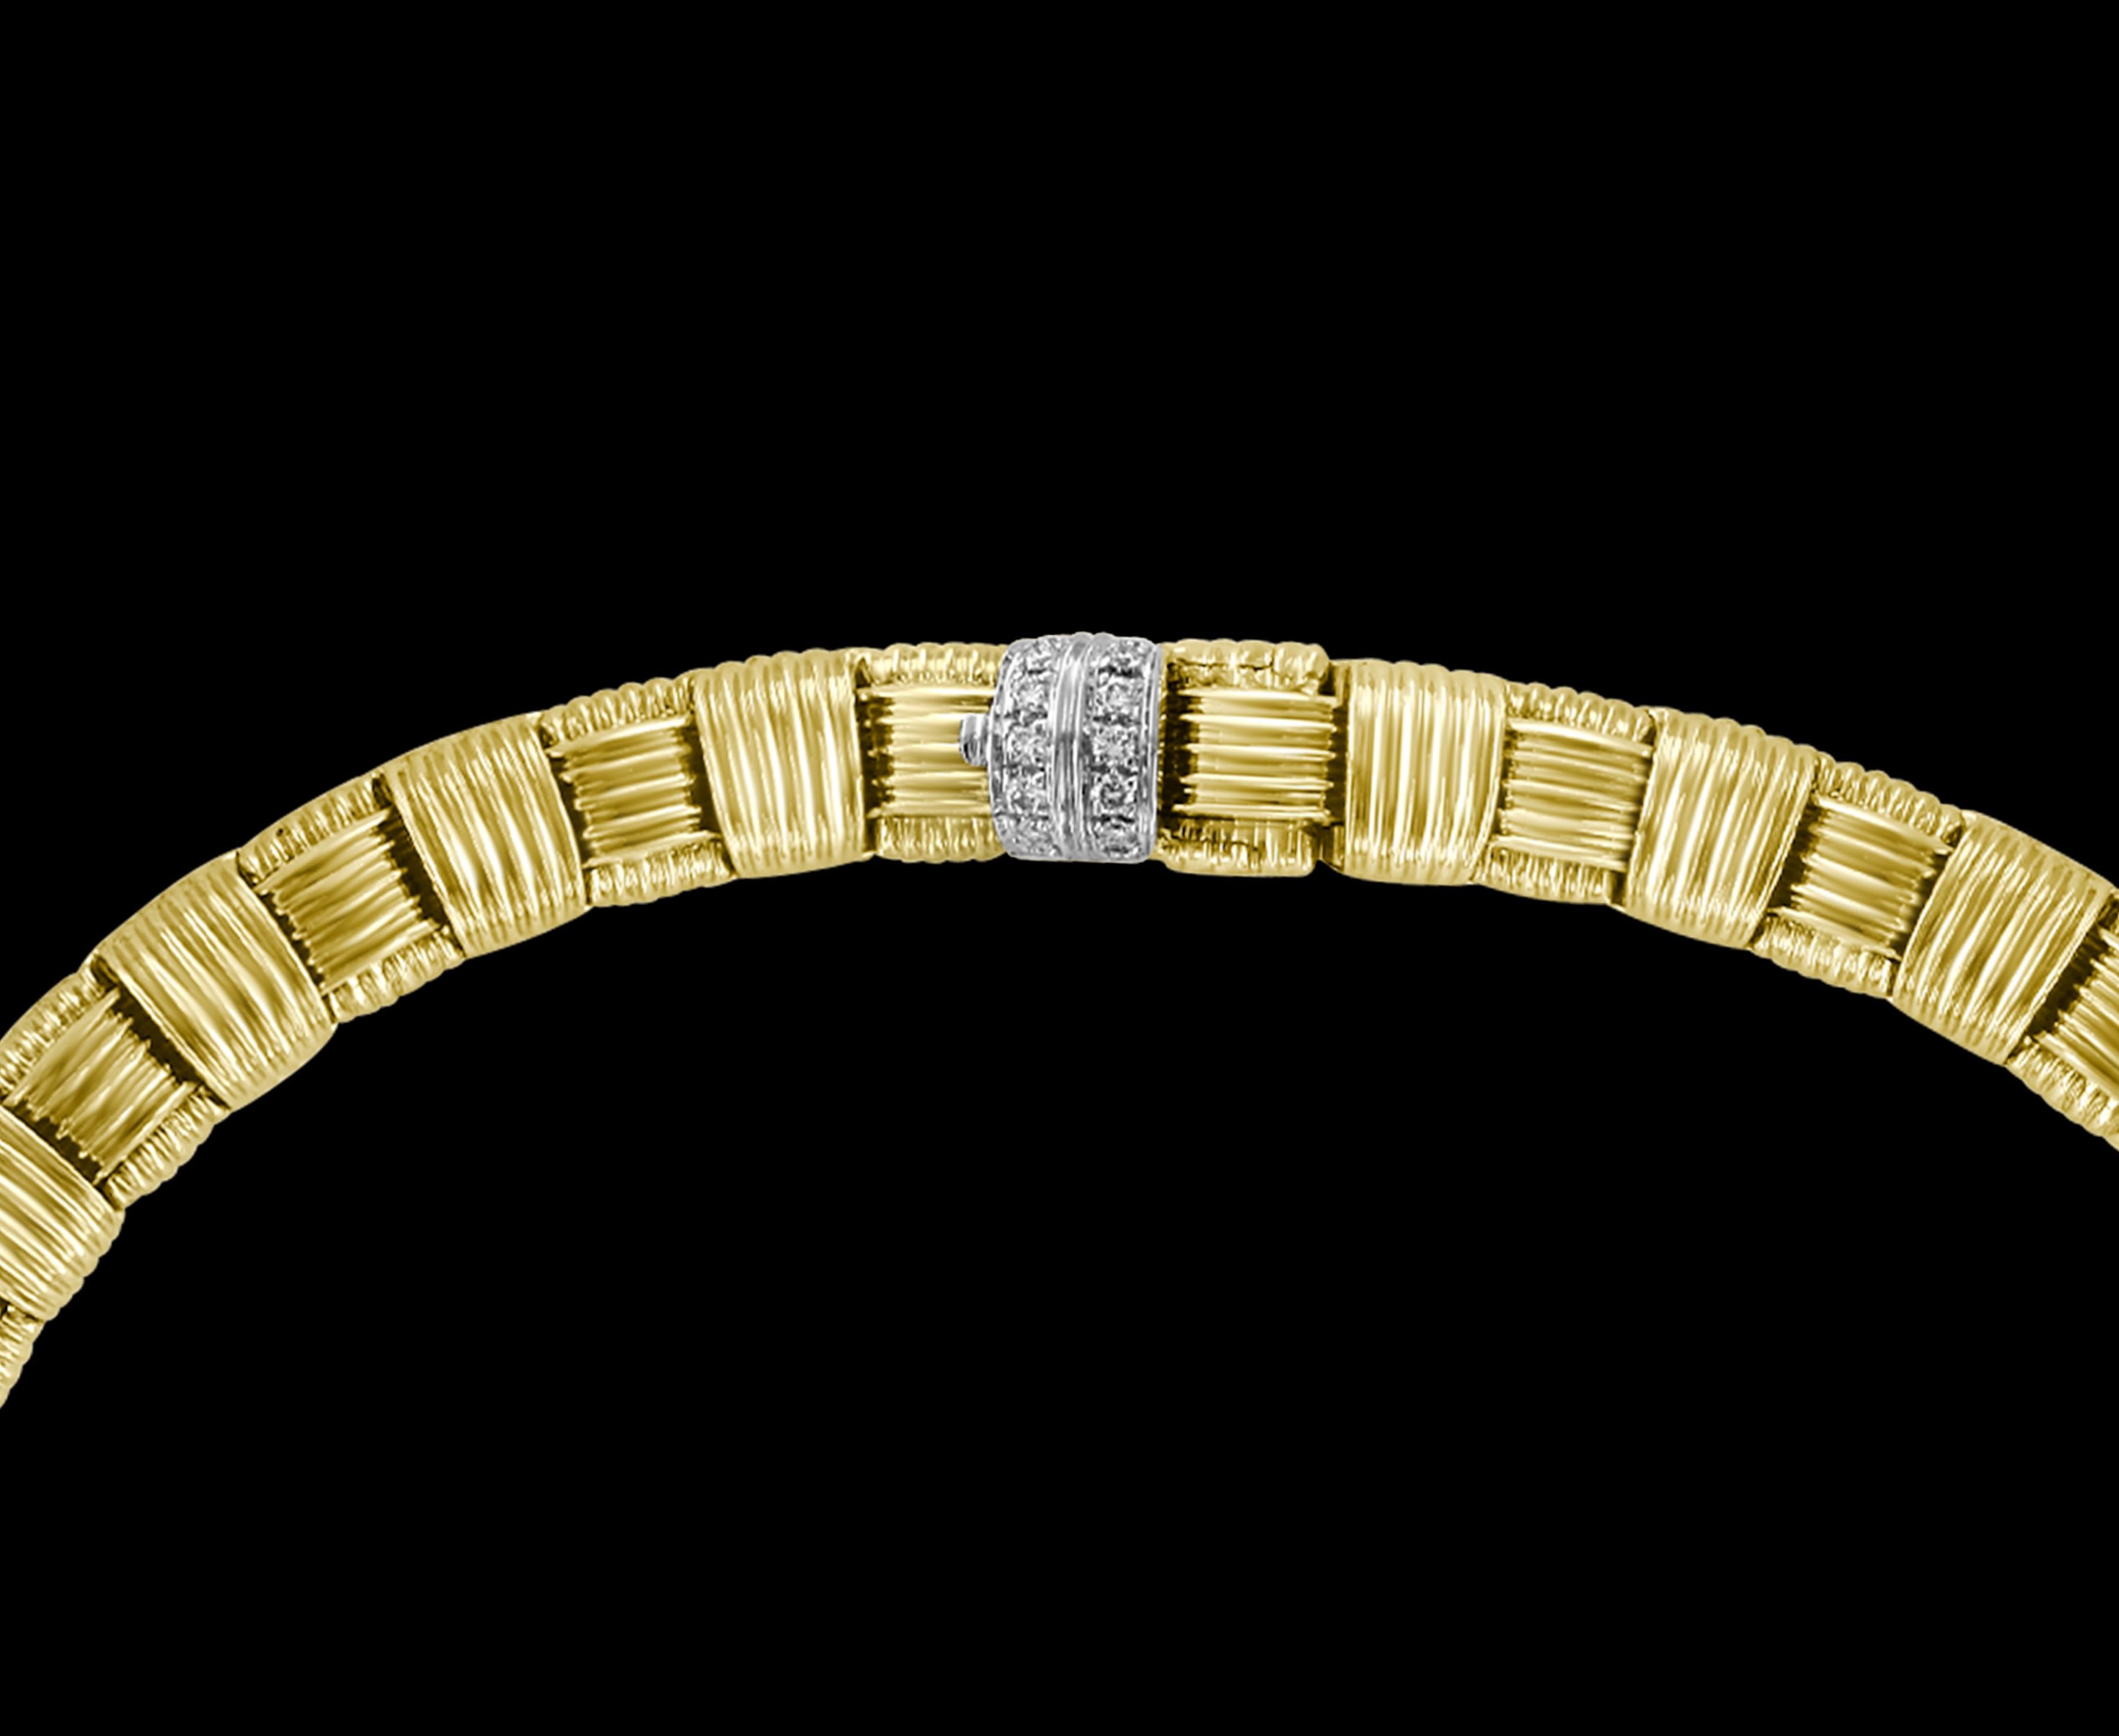 Témoignant d'une véritable élégance classique, ce collier Appasionata en or 18 carats avec fermoir en diamant pavé (.16ctw), est issu de sa collection signature. Les maillons d'or nervurés entrecroisés, dans un joli tressage de panier, apportent de